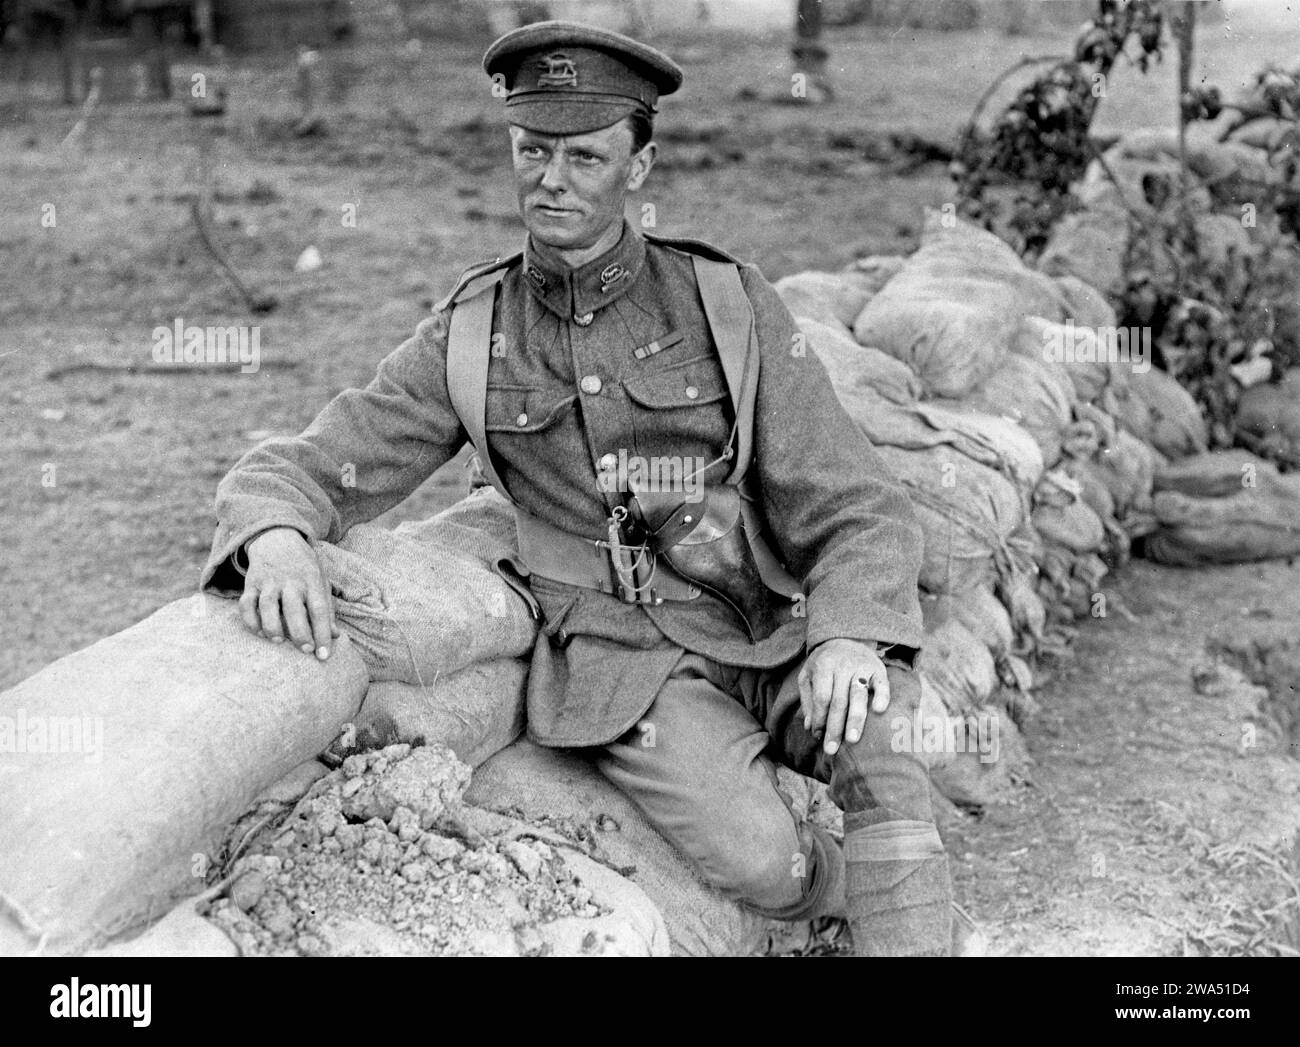 Major Cox der Leicester, der mit seinem Bataillon aus Indien nach Frankreich reiste (Leicester-Regiment, 2. Bataillon). Foto aus dem 1. Weltkrieg, aufgenommen 1915 in Frankreich von H. D. Girdwood. Dreiviertel Porträt in Uniform, auf Sandsäcken sitzend. Stockfoto